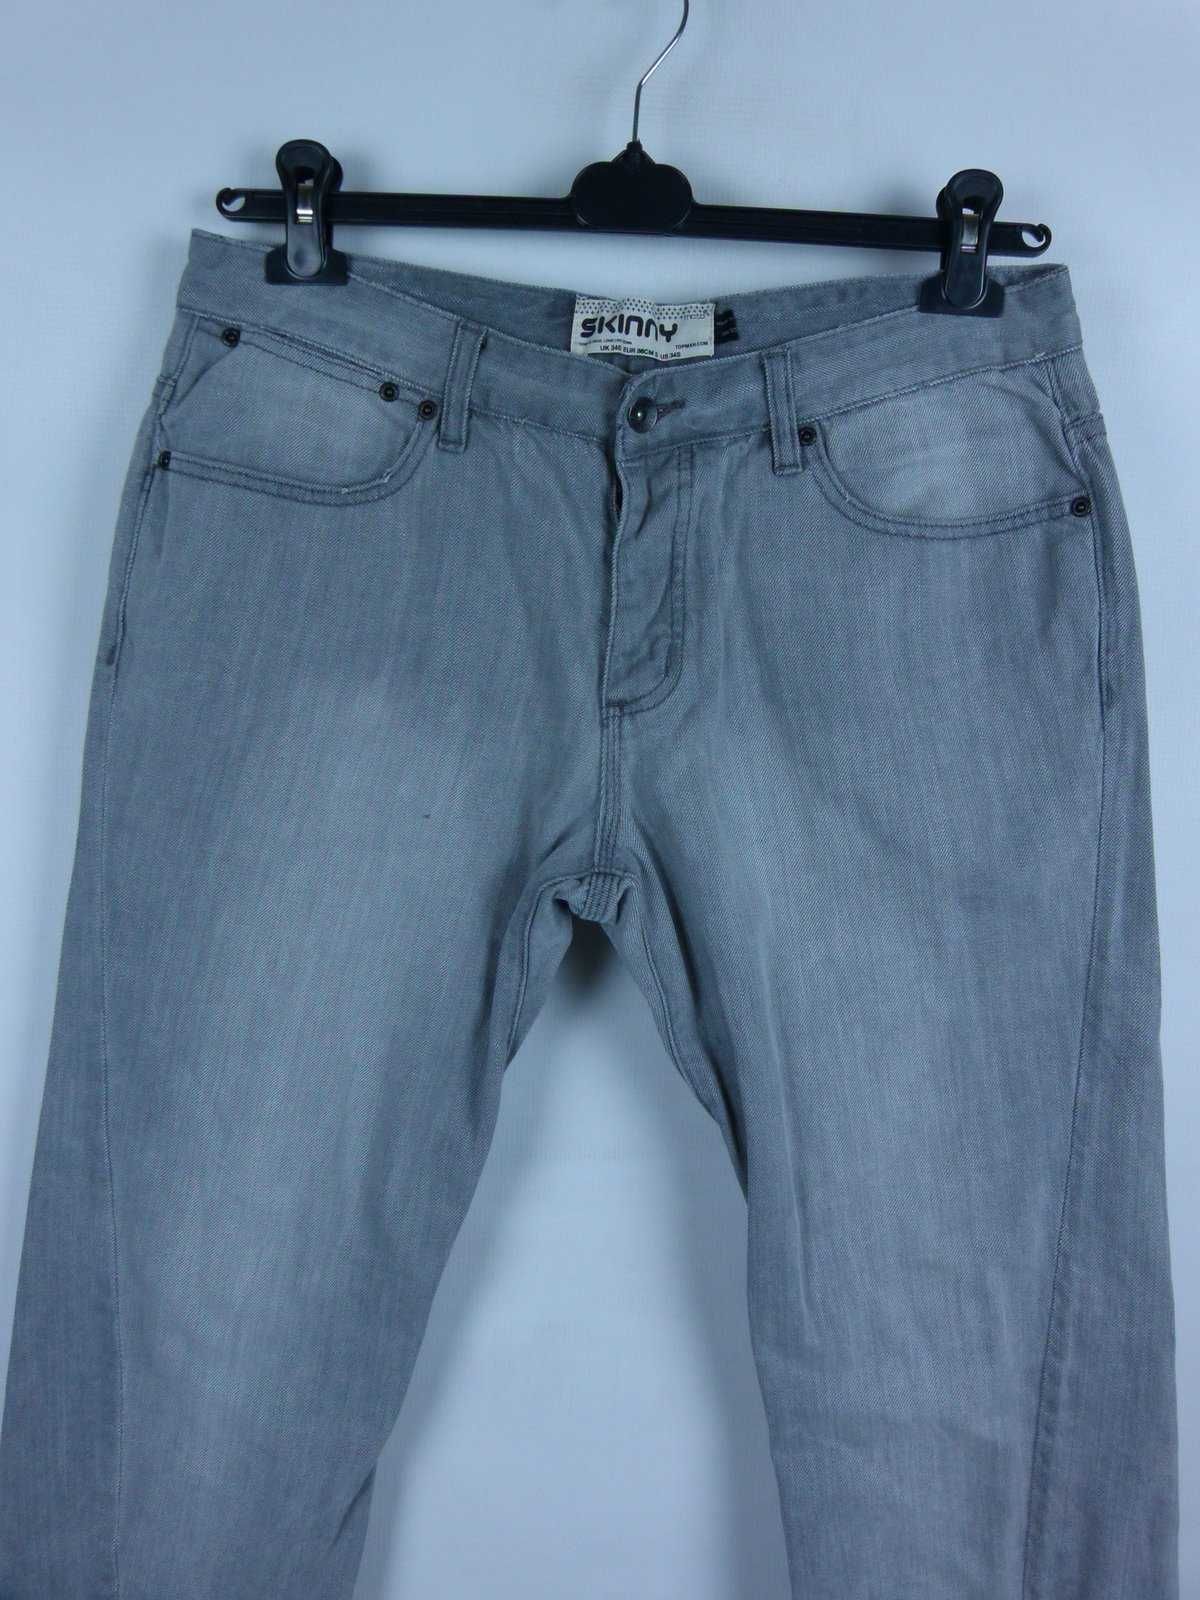 Topman szare spodnie skinny jeans / 34S